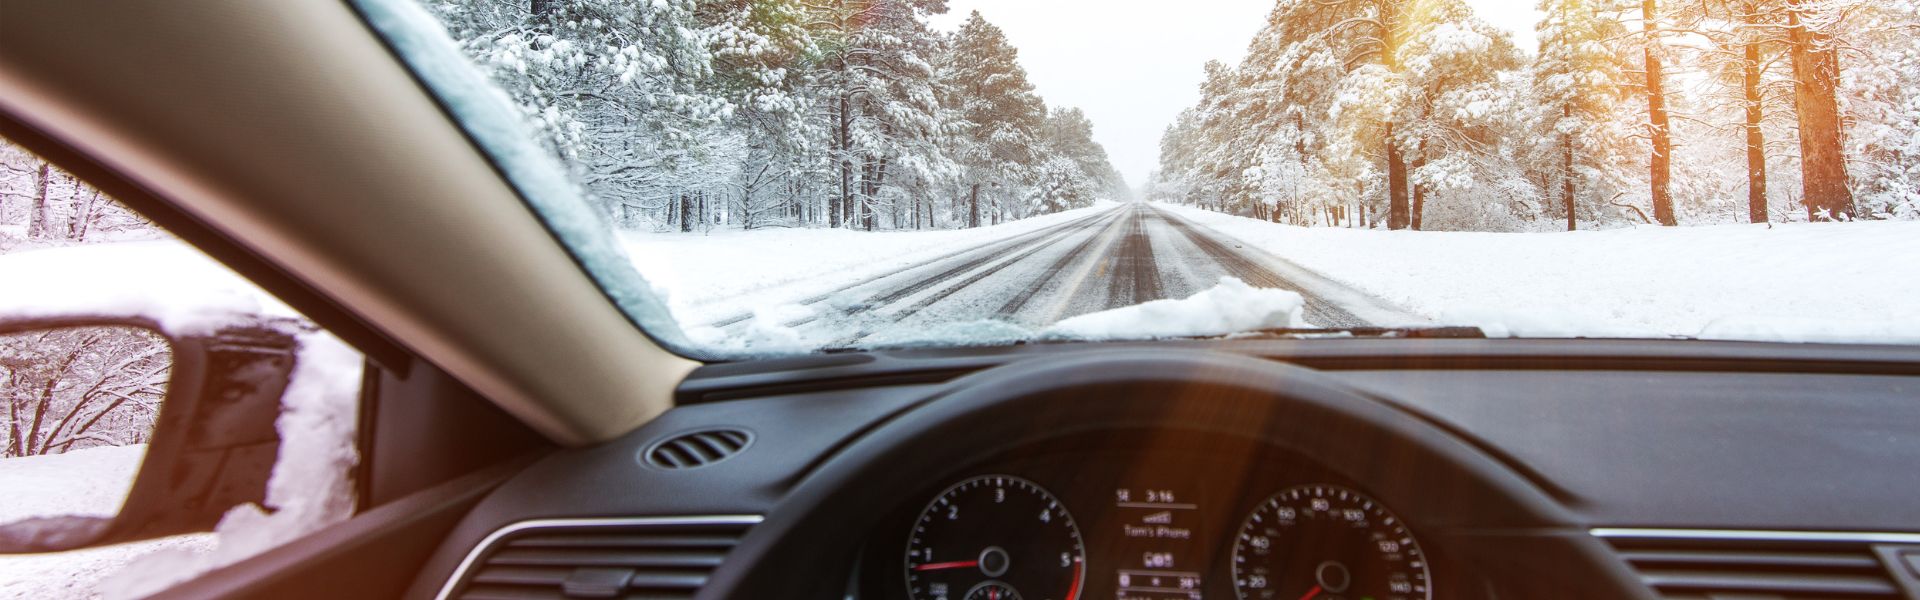 Jak jeździć zimą? Porady dla świeżych kierowców.